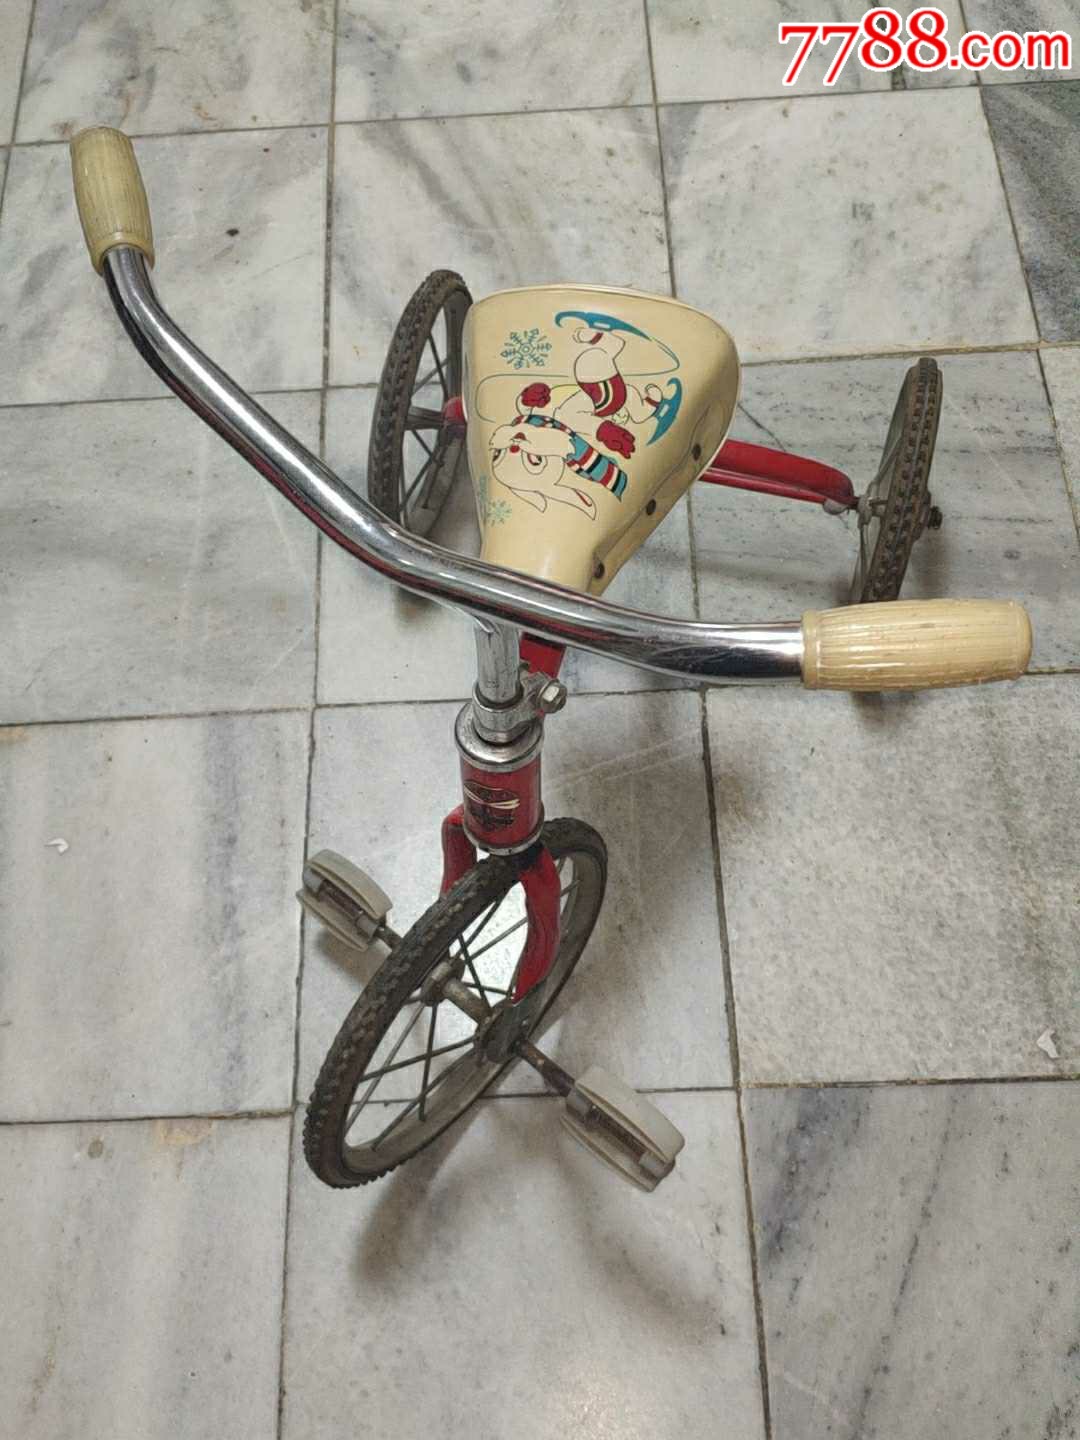 红蜻蜓三轮车北京童车一厂,怀旧七八十年代玩具.自取